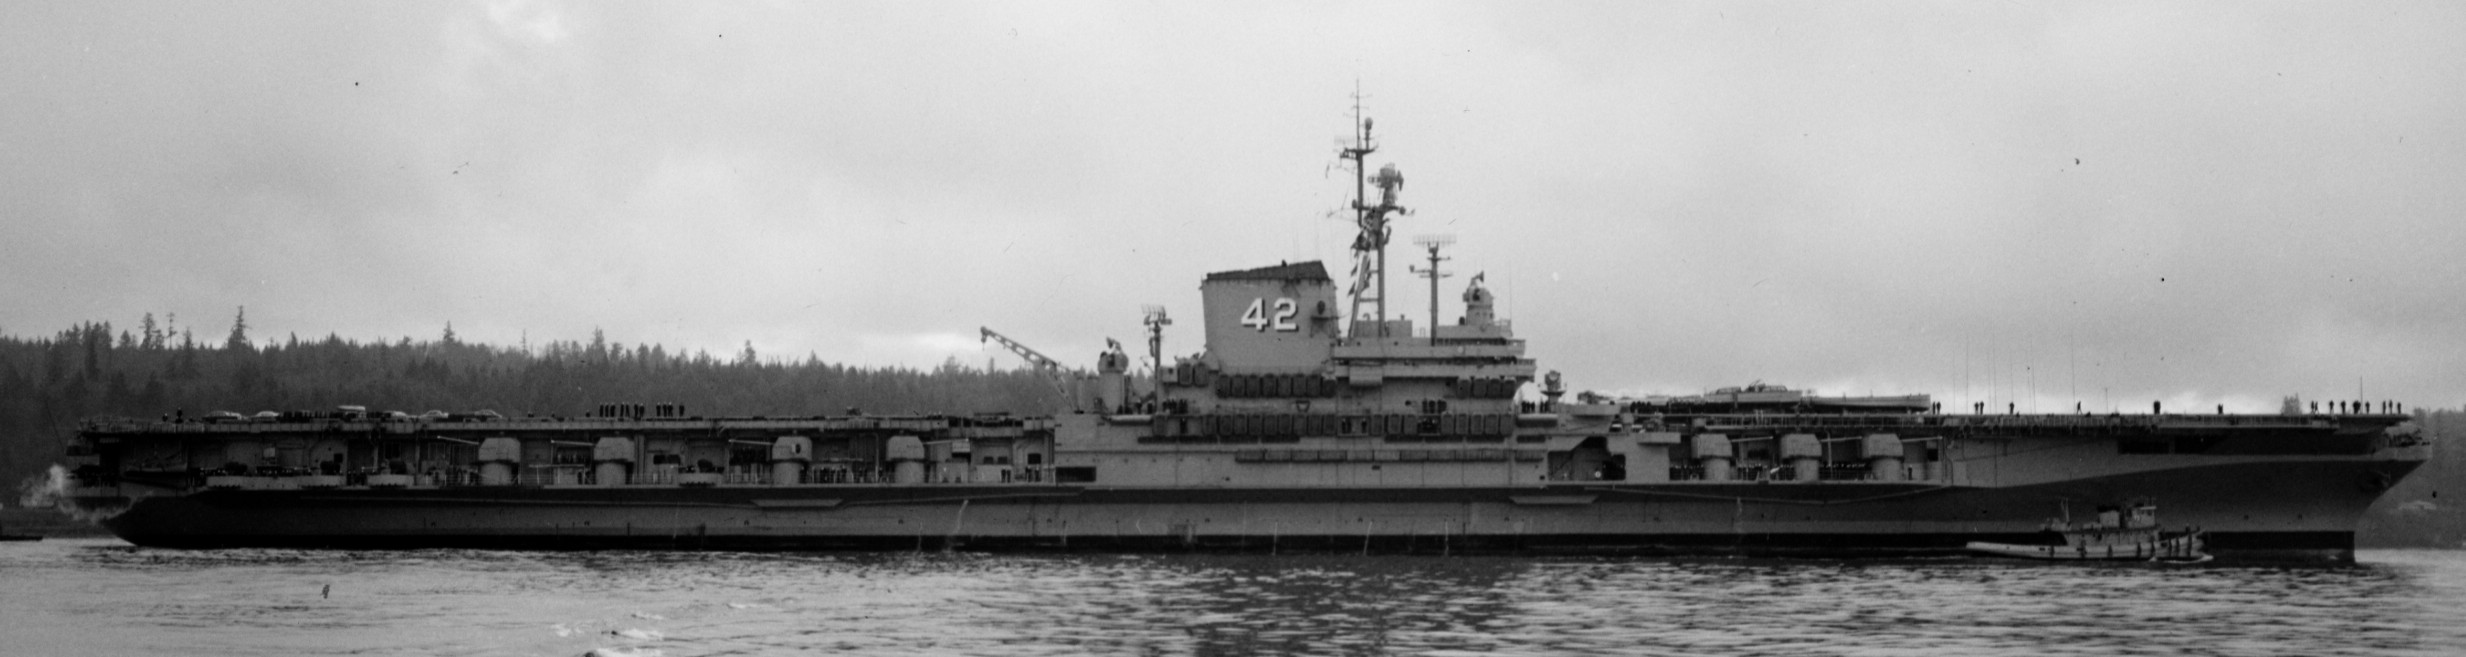 cva-42 uss franklin d. roosevelt midway class aircraft carrier 65